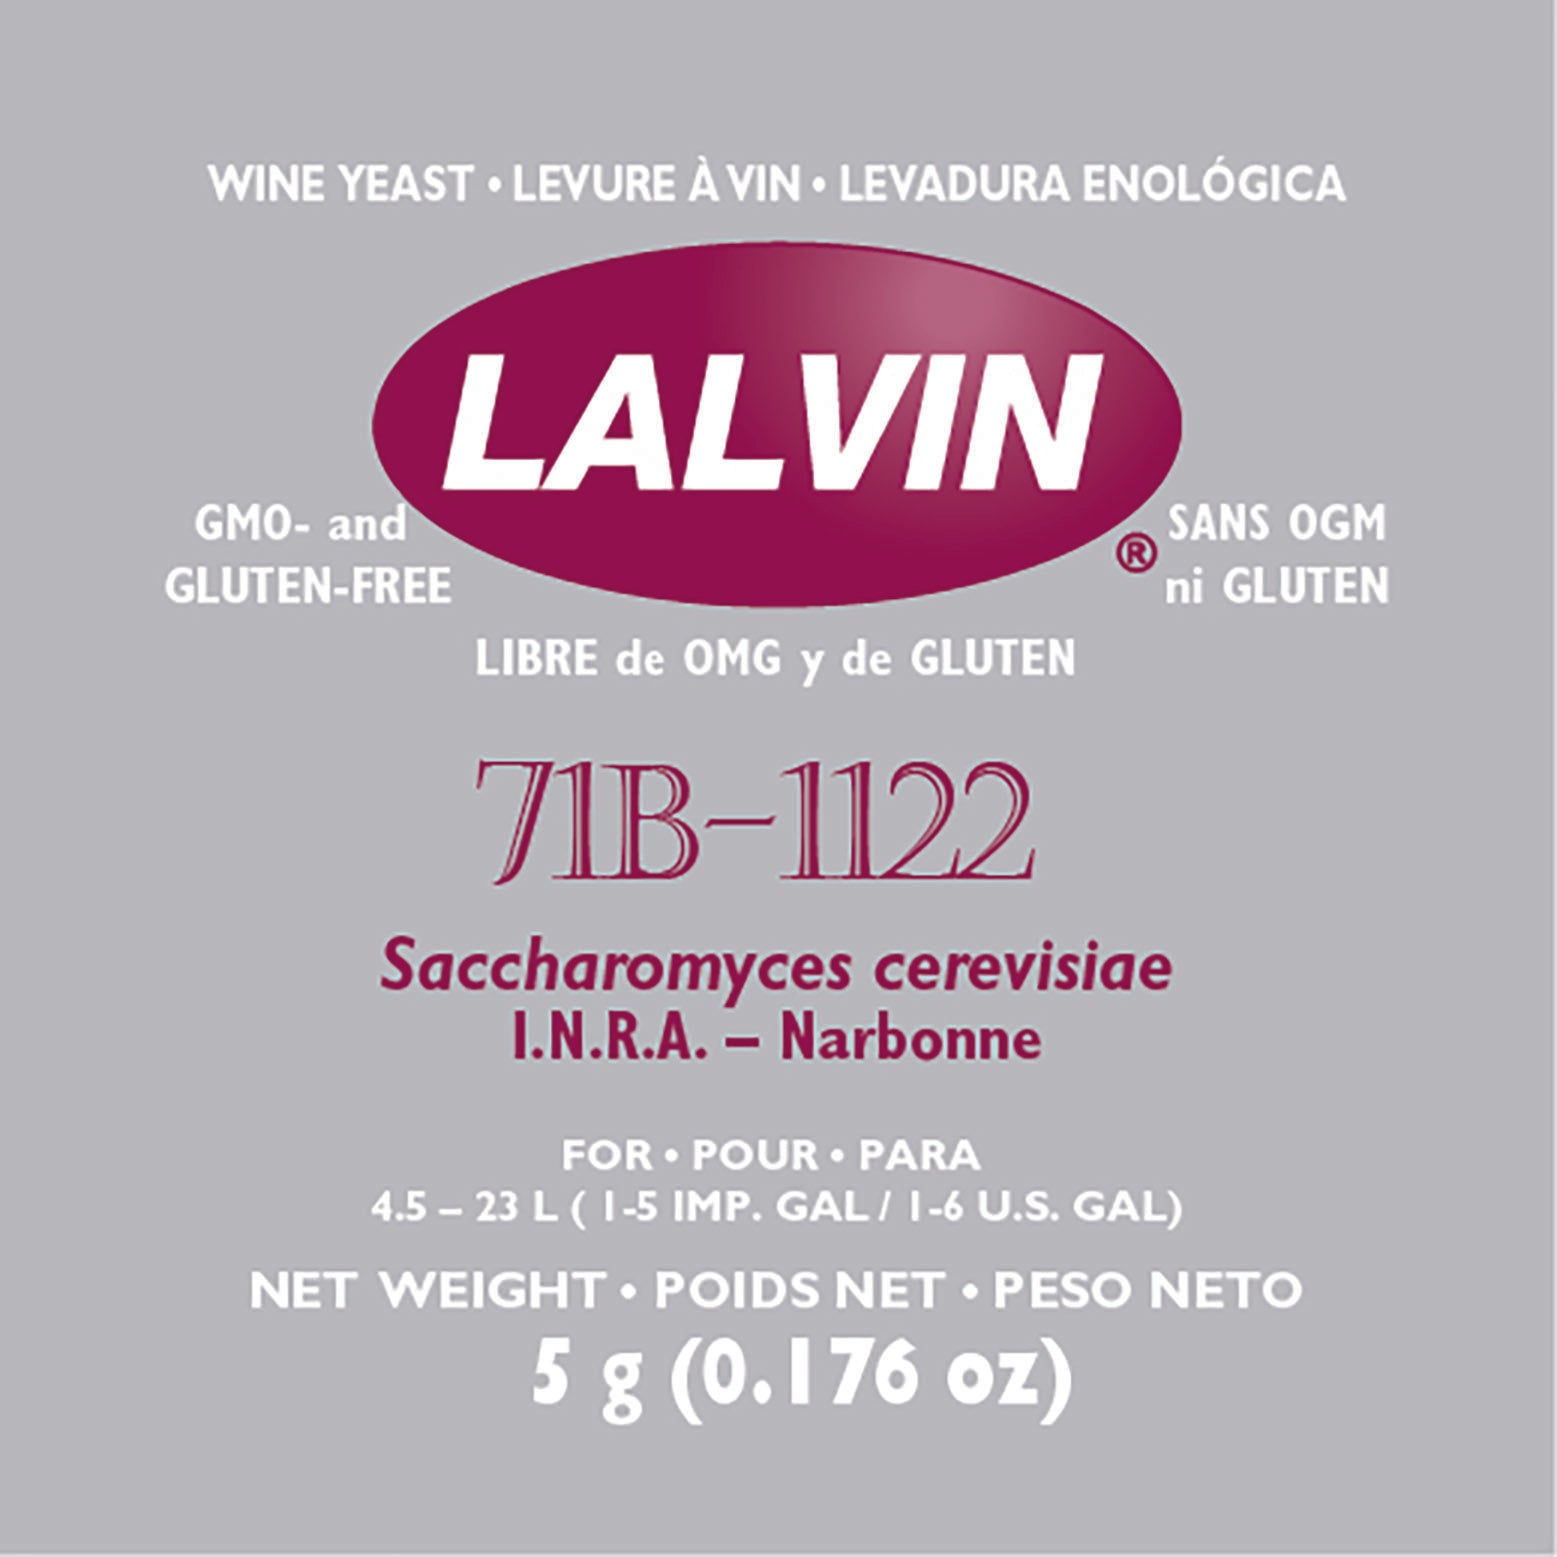 Lalvin 71B-1122 - Dry Wine Yeast